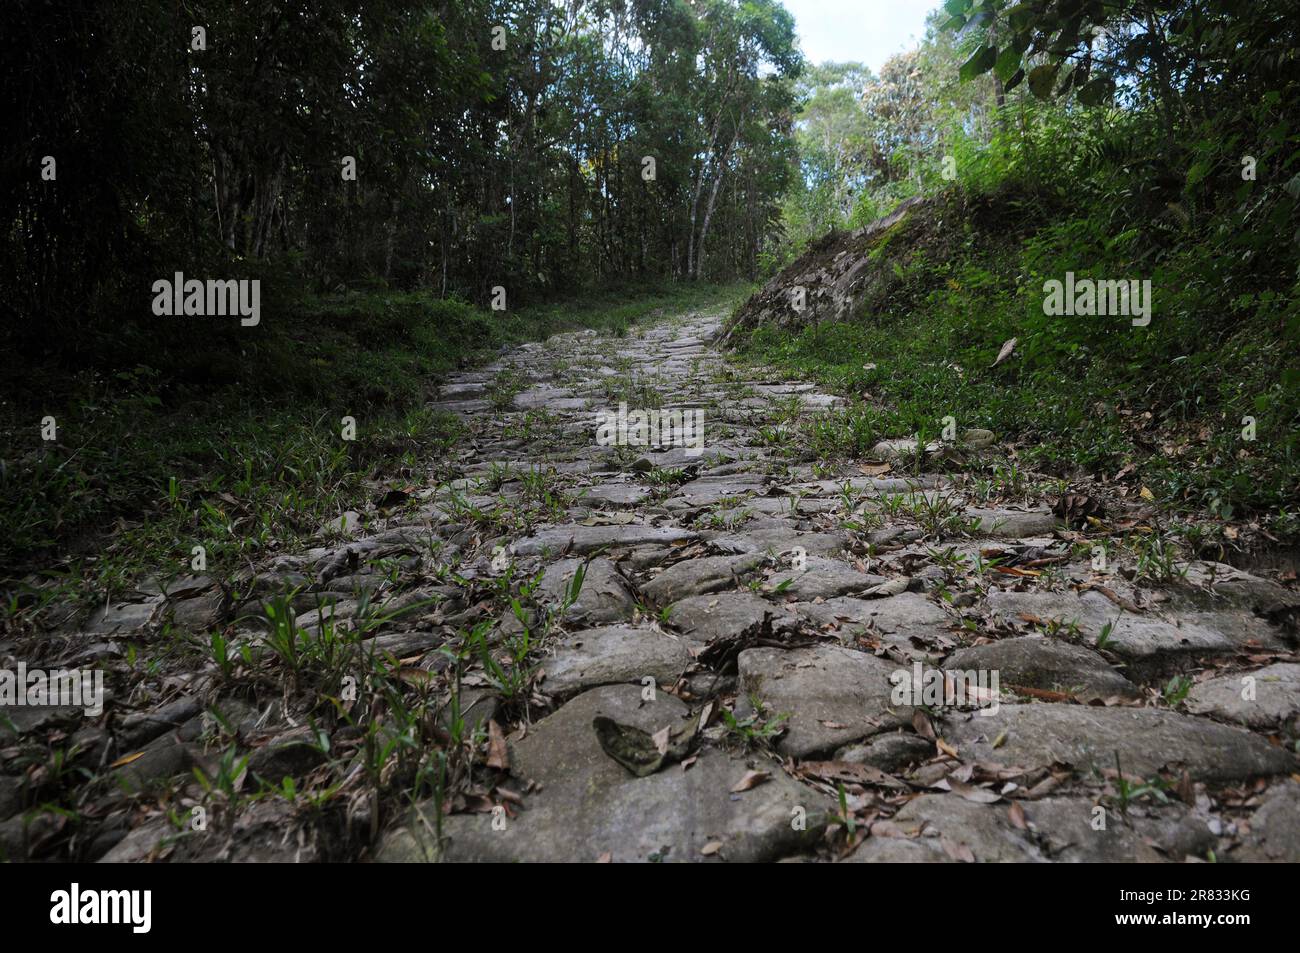 Gold Trail con il suo storico marciapiede fatto da schiavi nel XVIII secolo, situato nel Parco Nazionale della Serra da Bocaina, nello stato di São P. Foto Stock